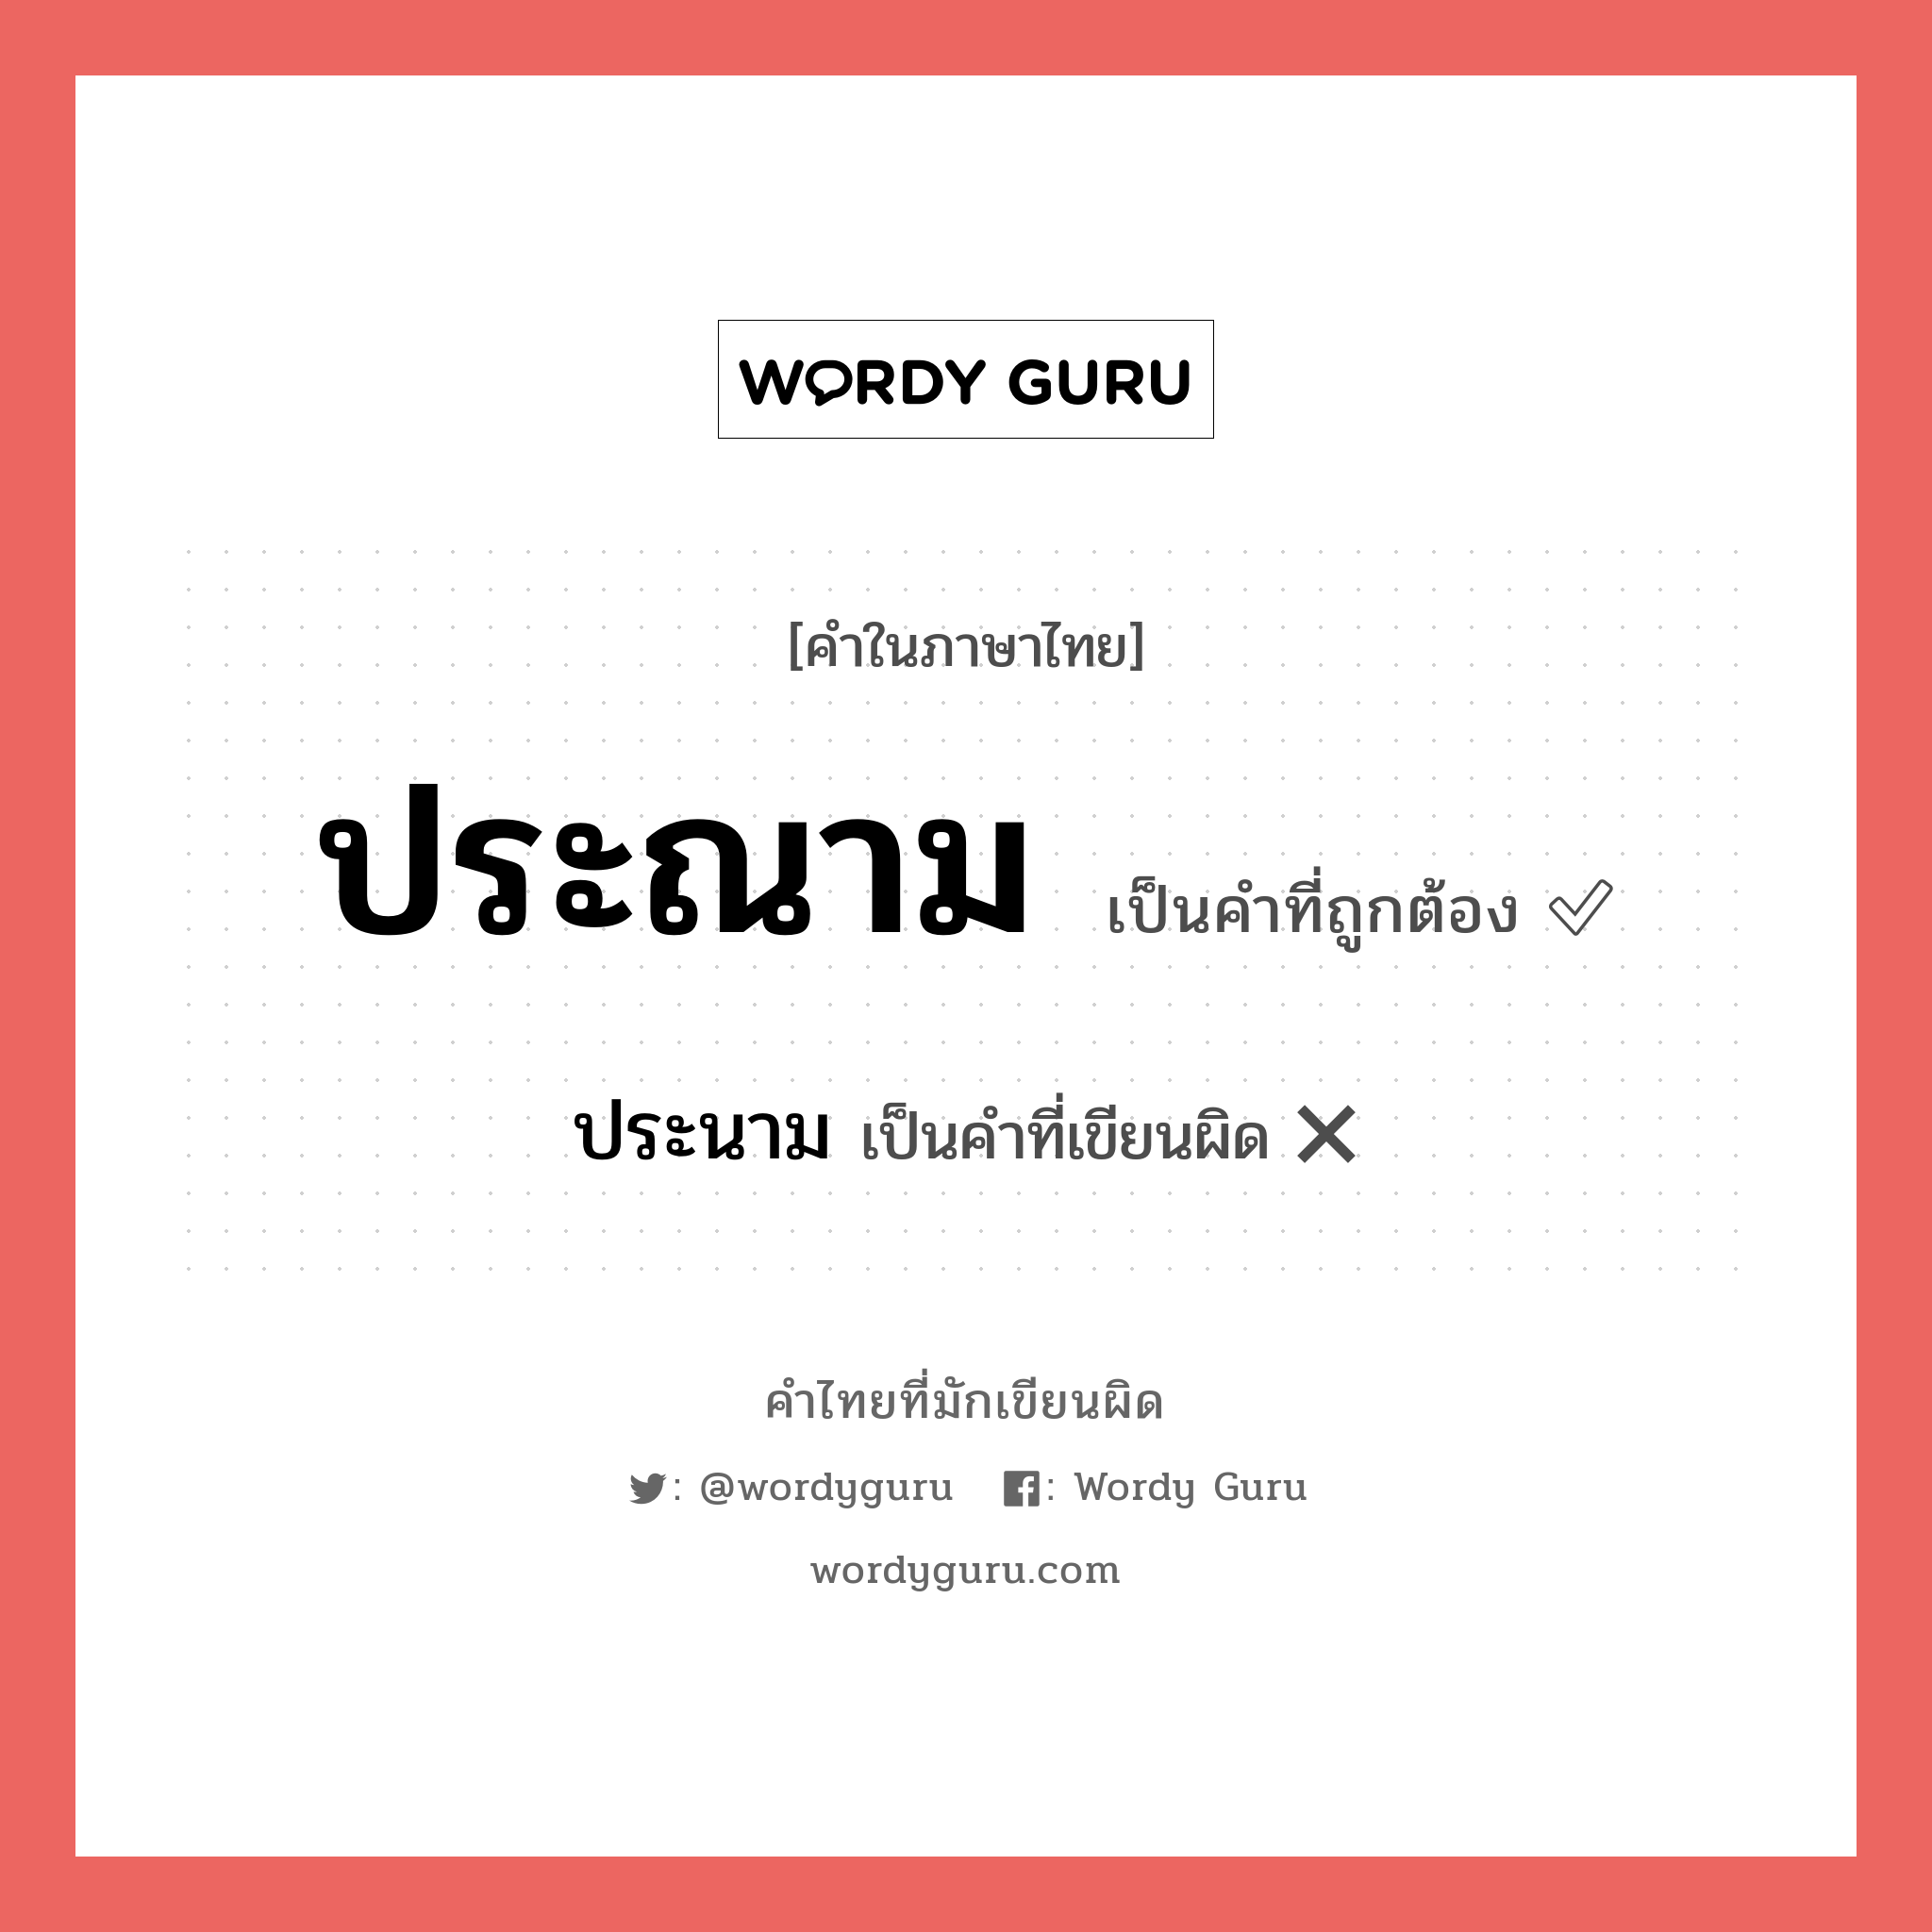 ประณาม หรือ ประนาม คำไหนเขียนถูก?, คำในภาษาไทยที่มักเขียนผิด ประณาม คำที่ผิด ❌ ประนาม